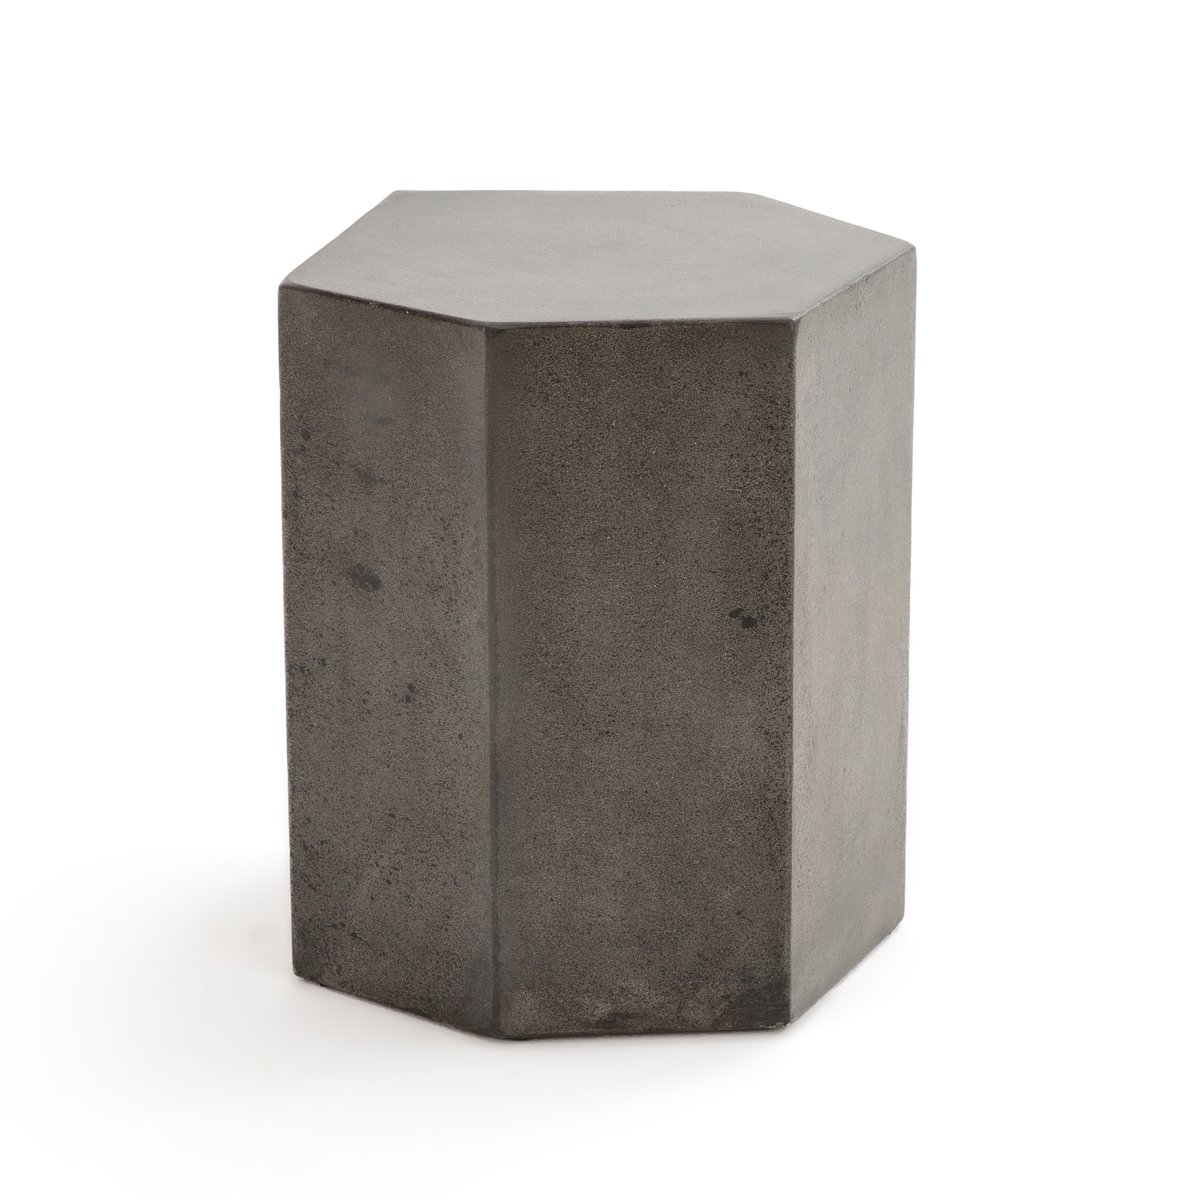 Столик La Redoute Журнальный из цементного волокна CONCRITE единый размер серый - фото 1